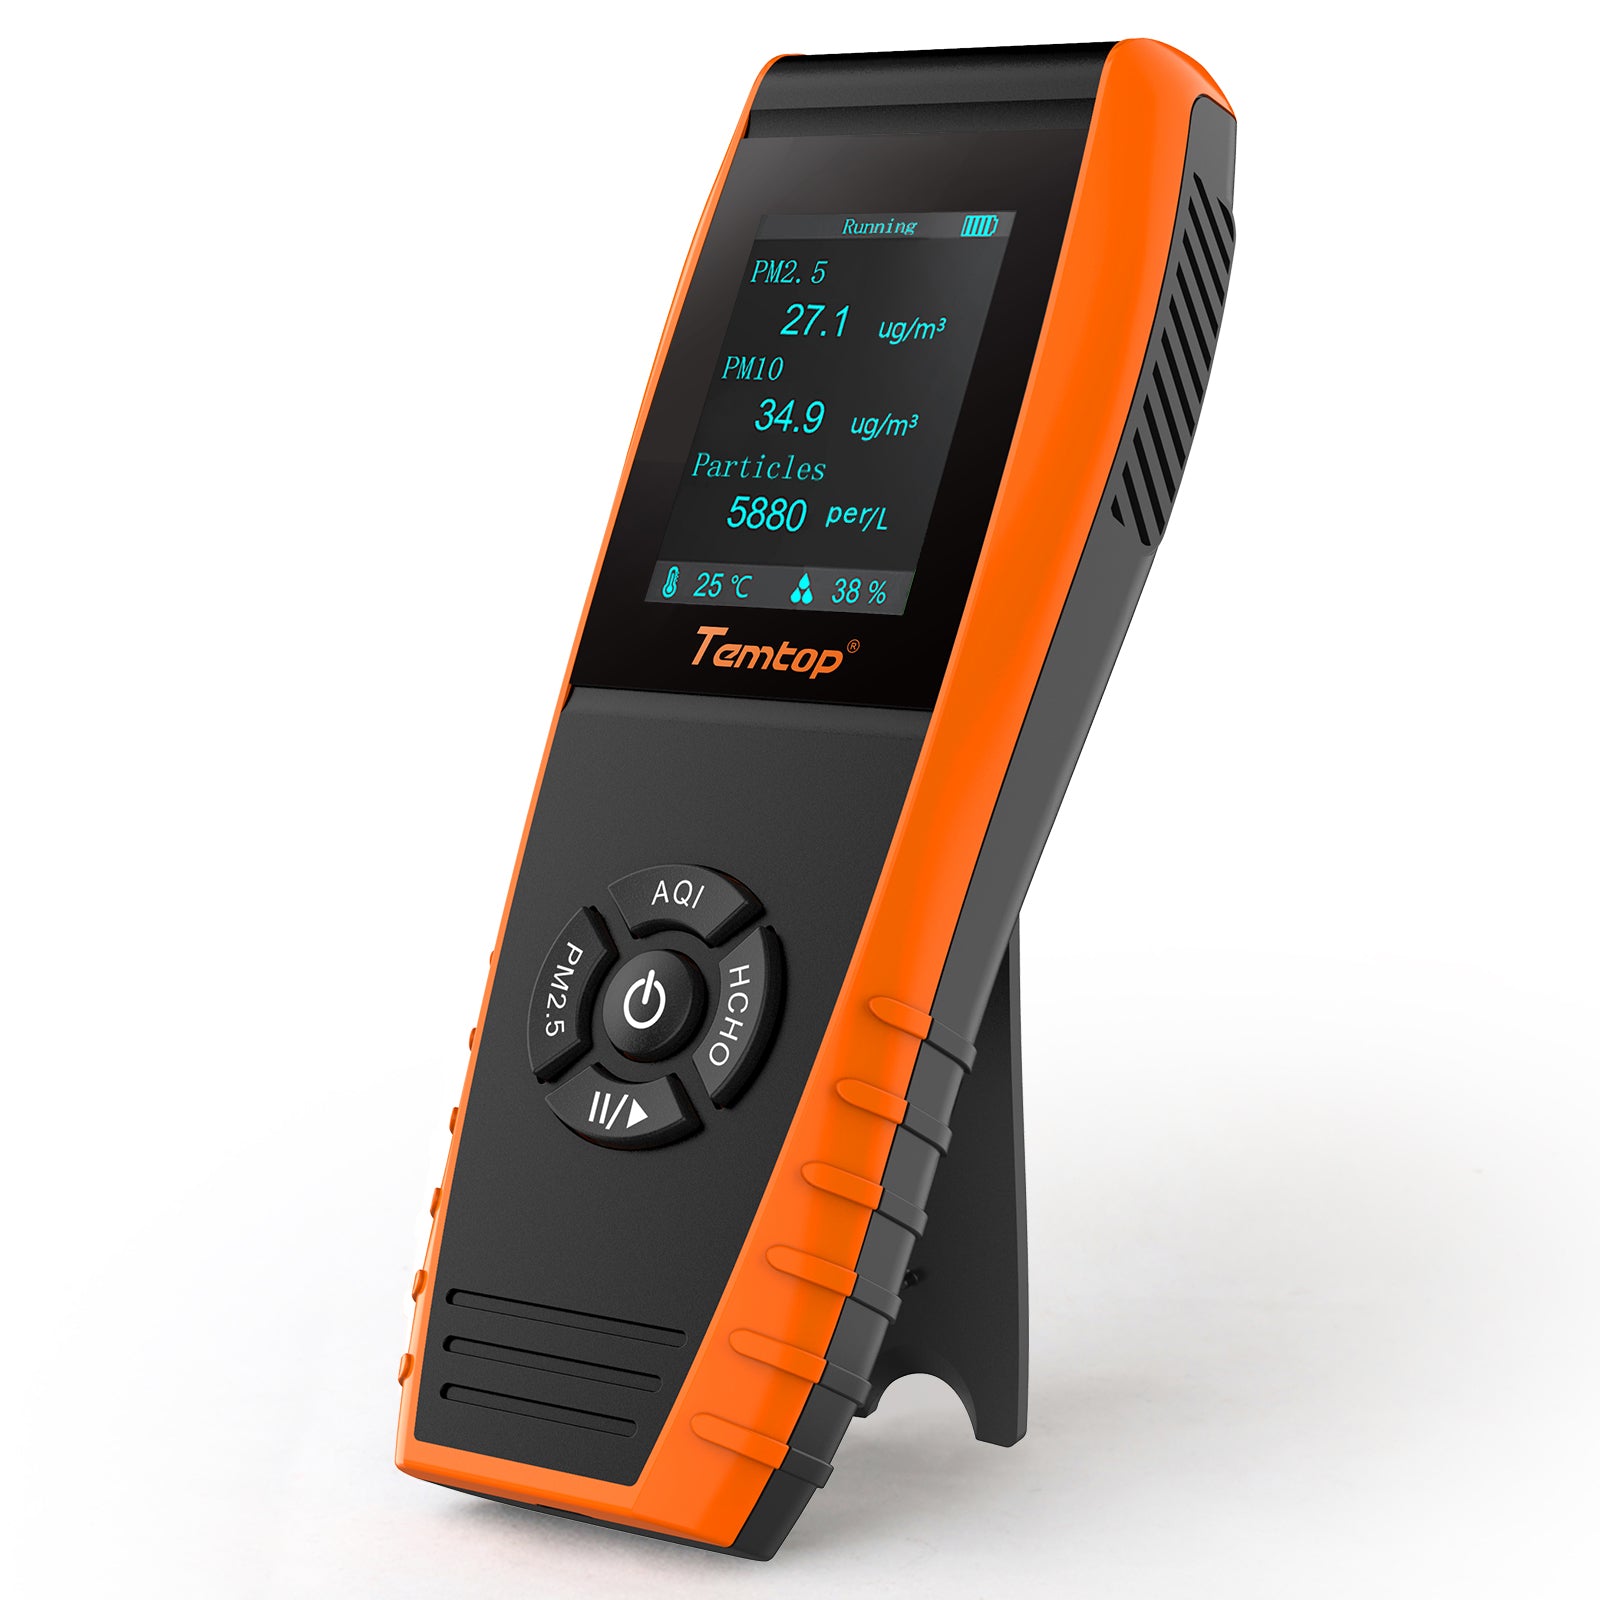 Temtop LKC-1000S+ Monitor de calidad del aire para PM2.5 PM10 HCHO AQI Partículas COV Temperatura de humedad